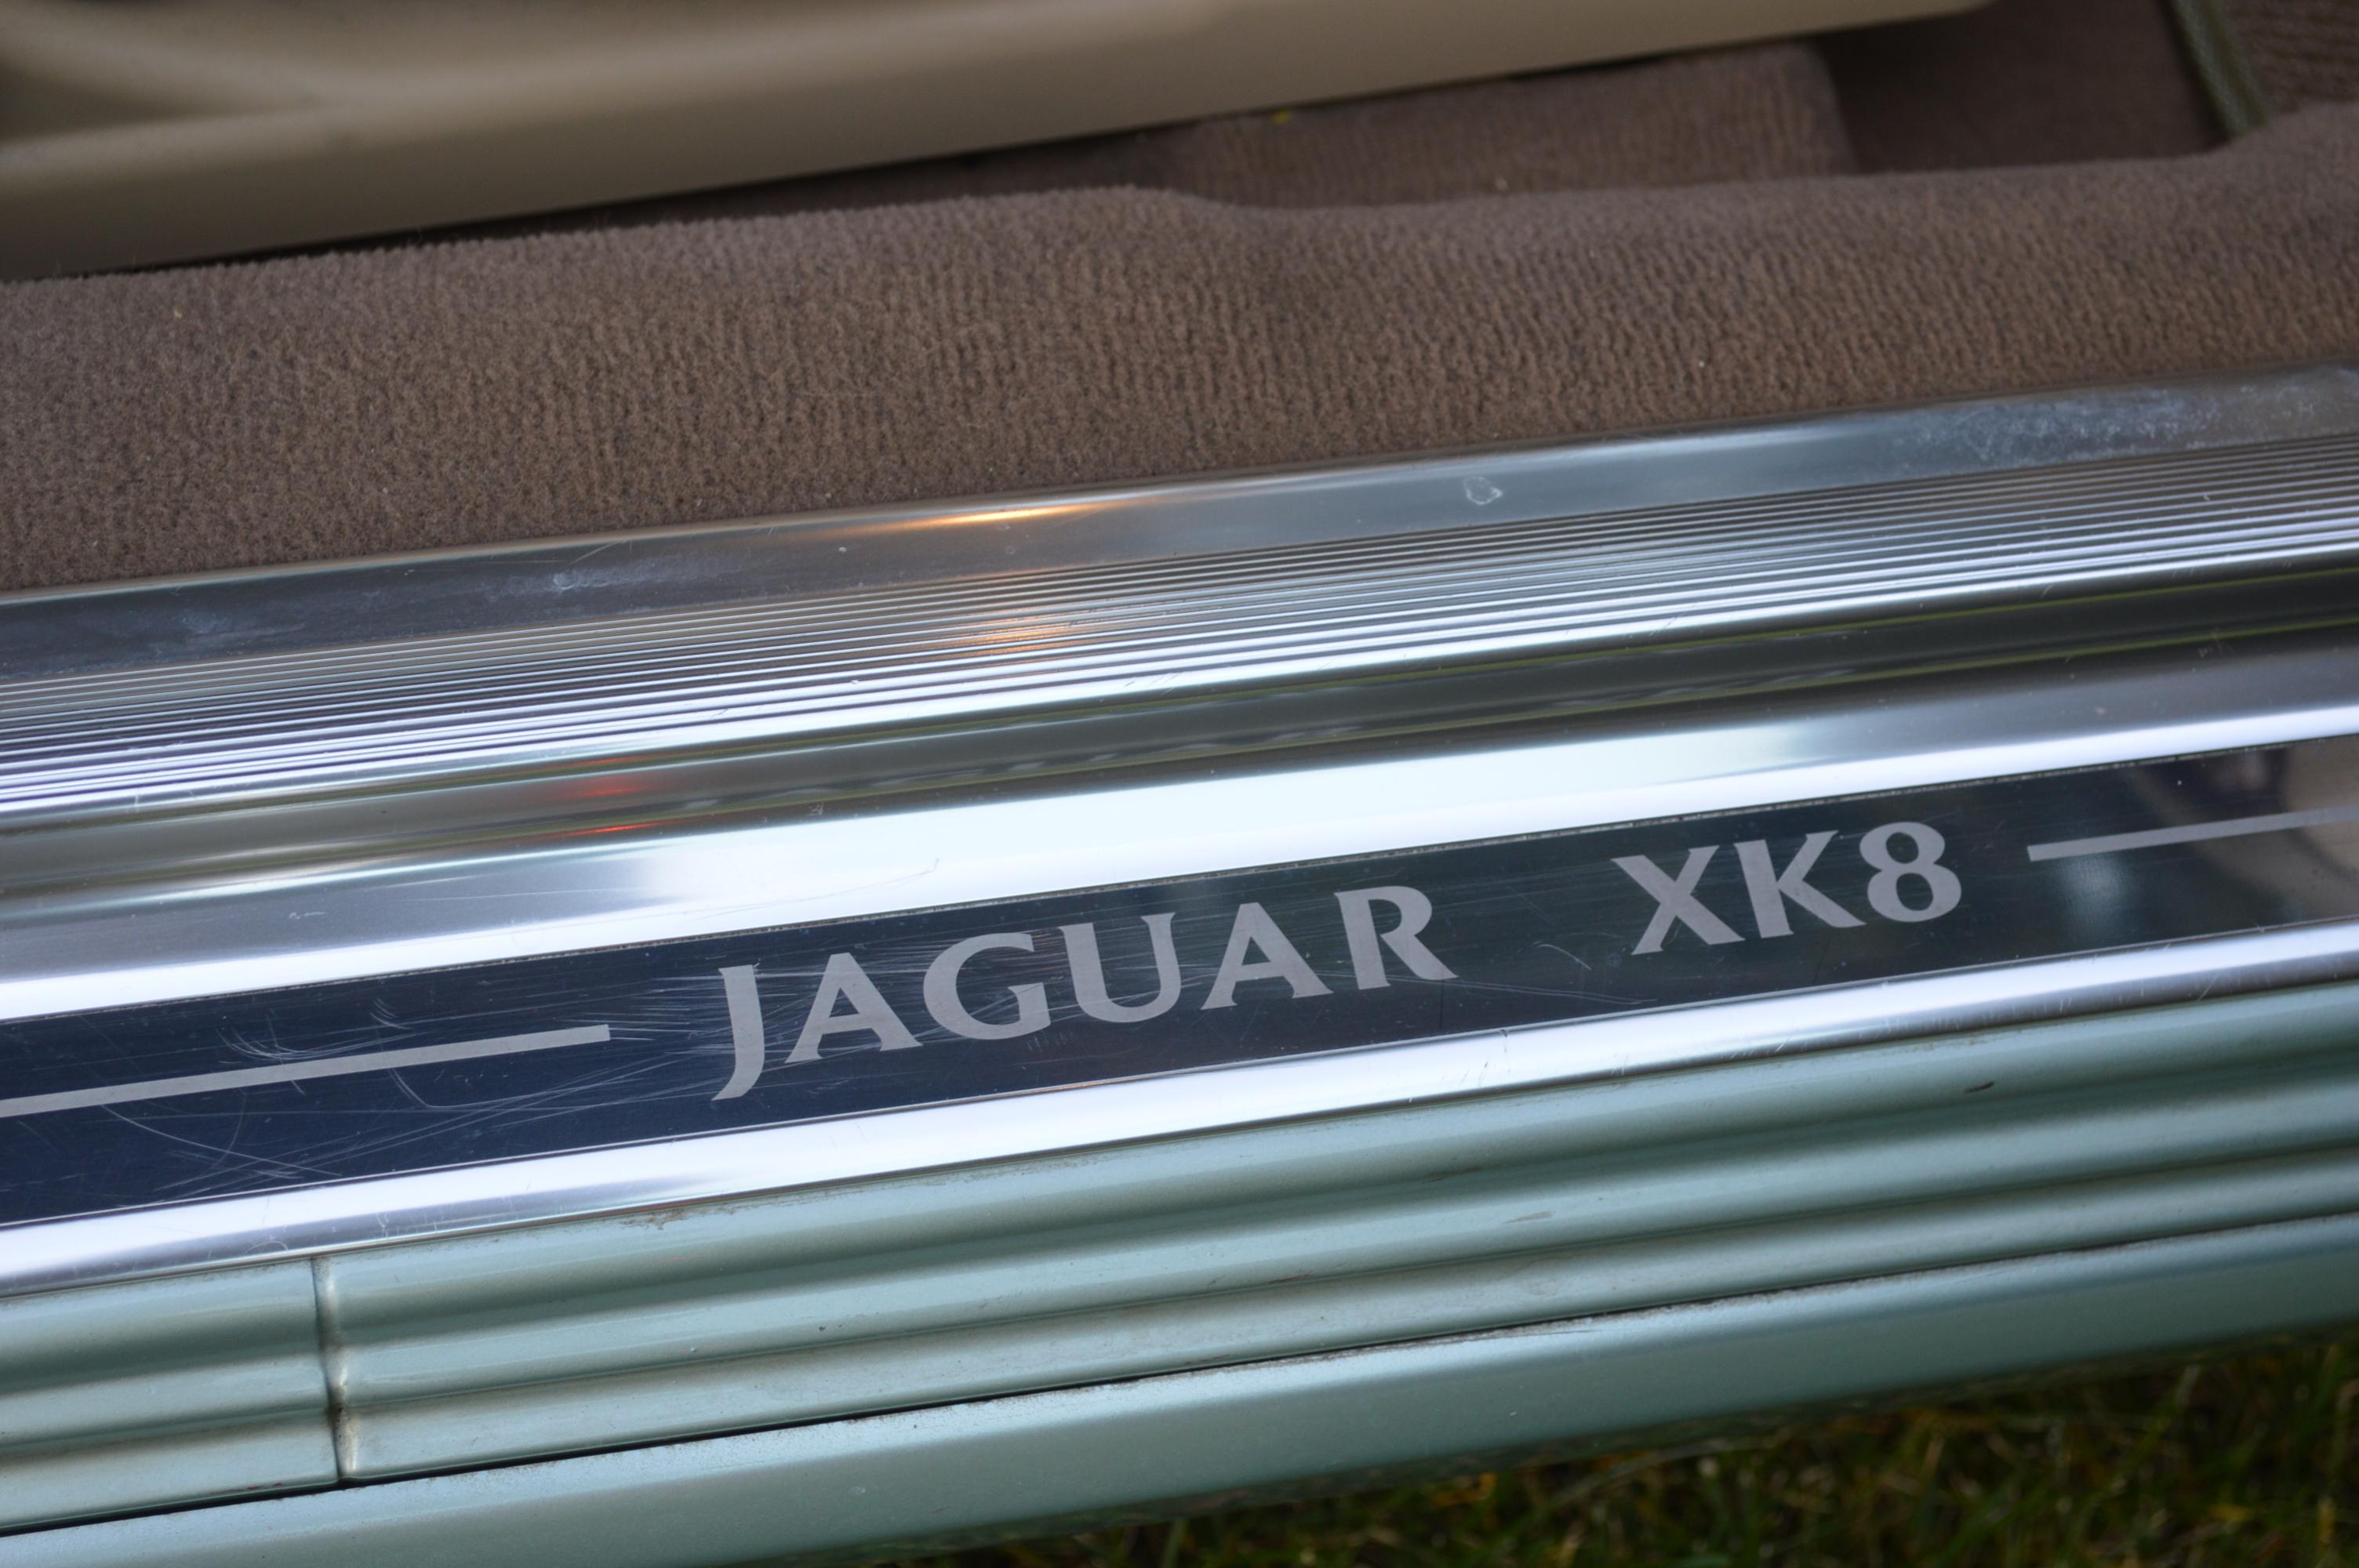 2005 JAGUAR XK8 CONVERTIBLE - 2 DOOR